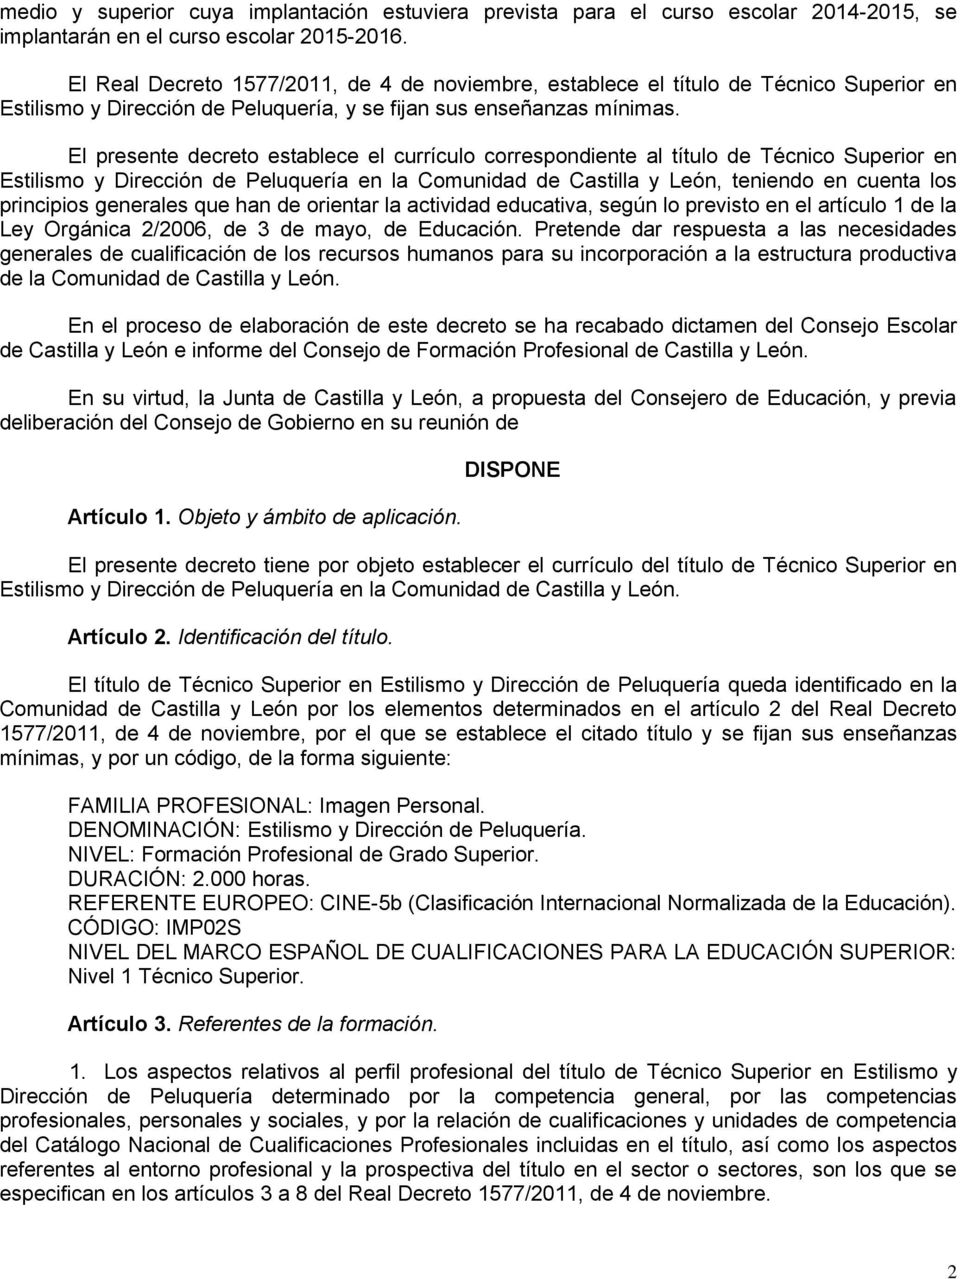 El presente decreto establece el currículo correspondiente al título de Técnico Superior en Estilismo y Dirección de Peluquería en la Comunidad de Castilla y León, teniendo en cuenta los principios